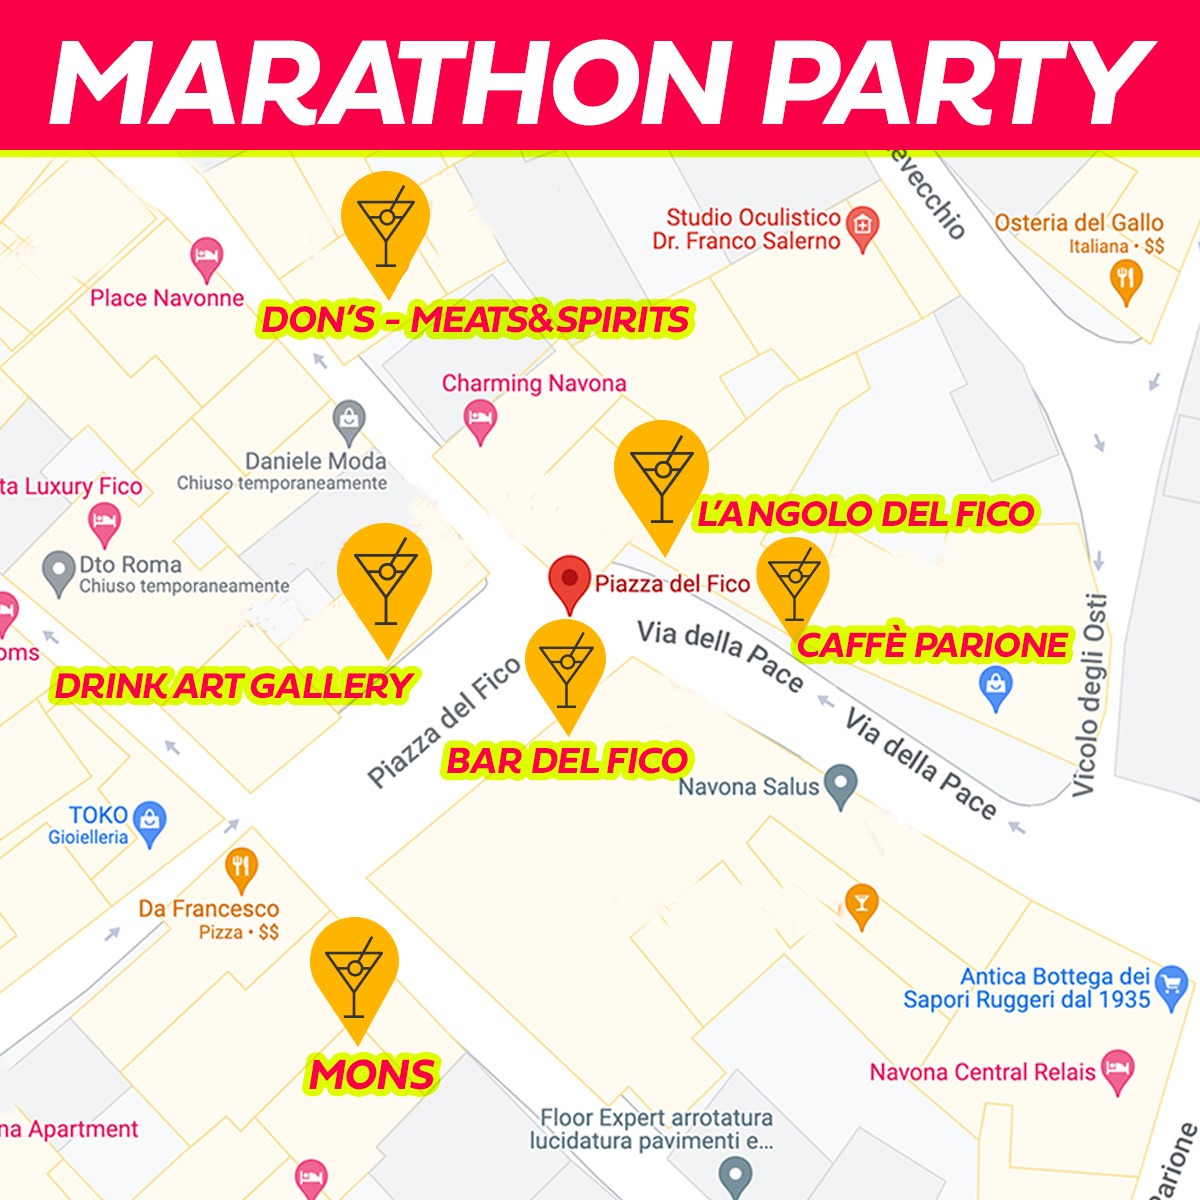 Partecipa al Marathon Party, pronti alla festa delle medaglie?